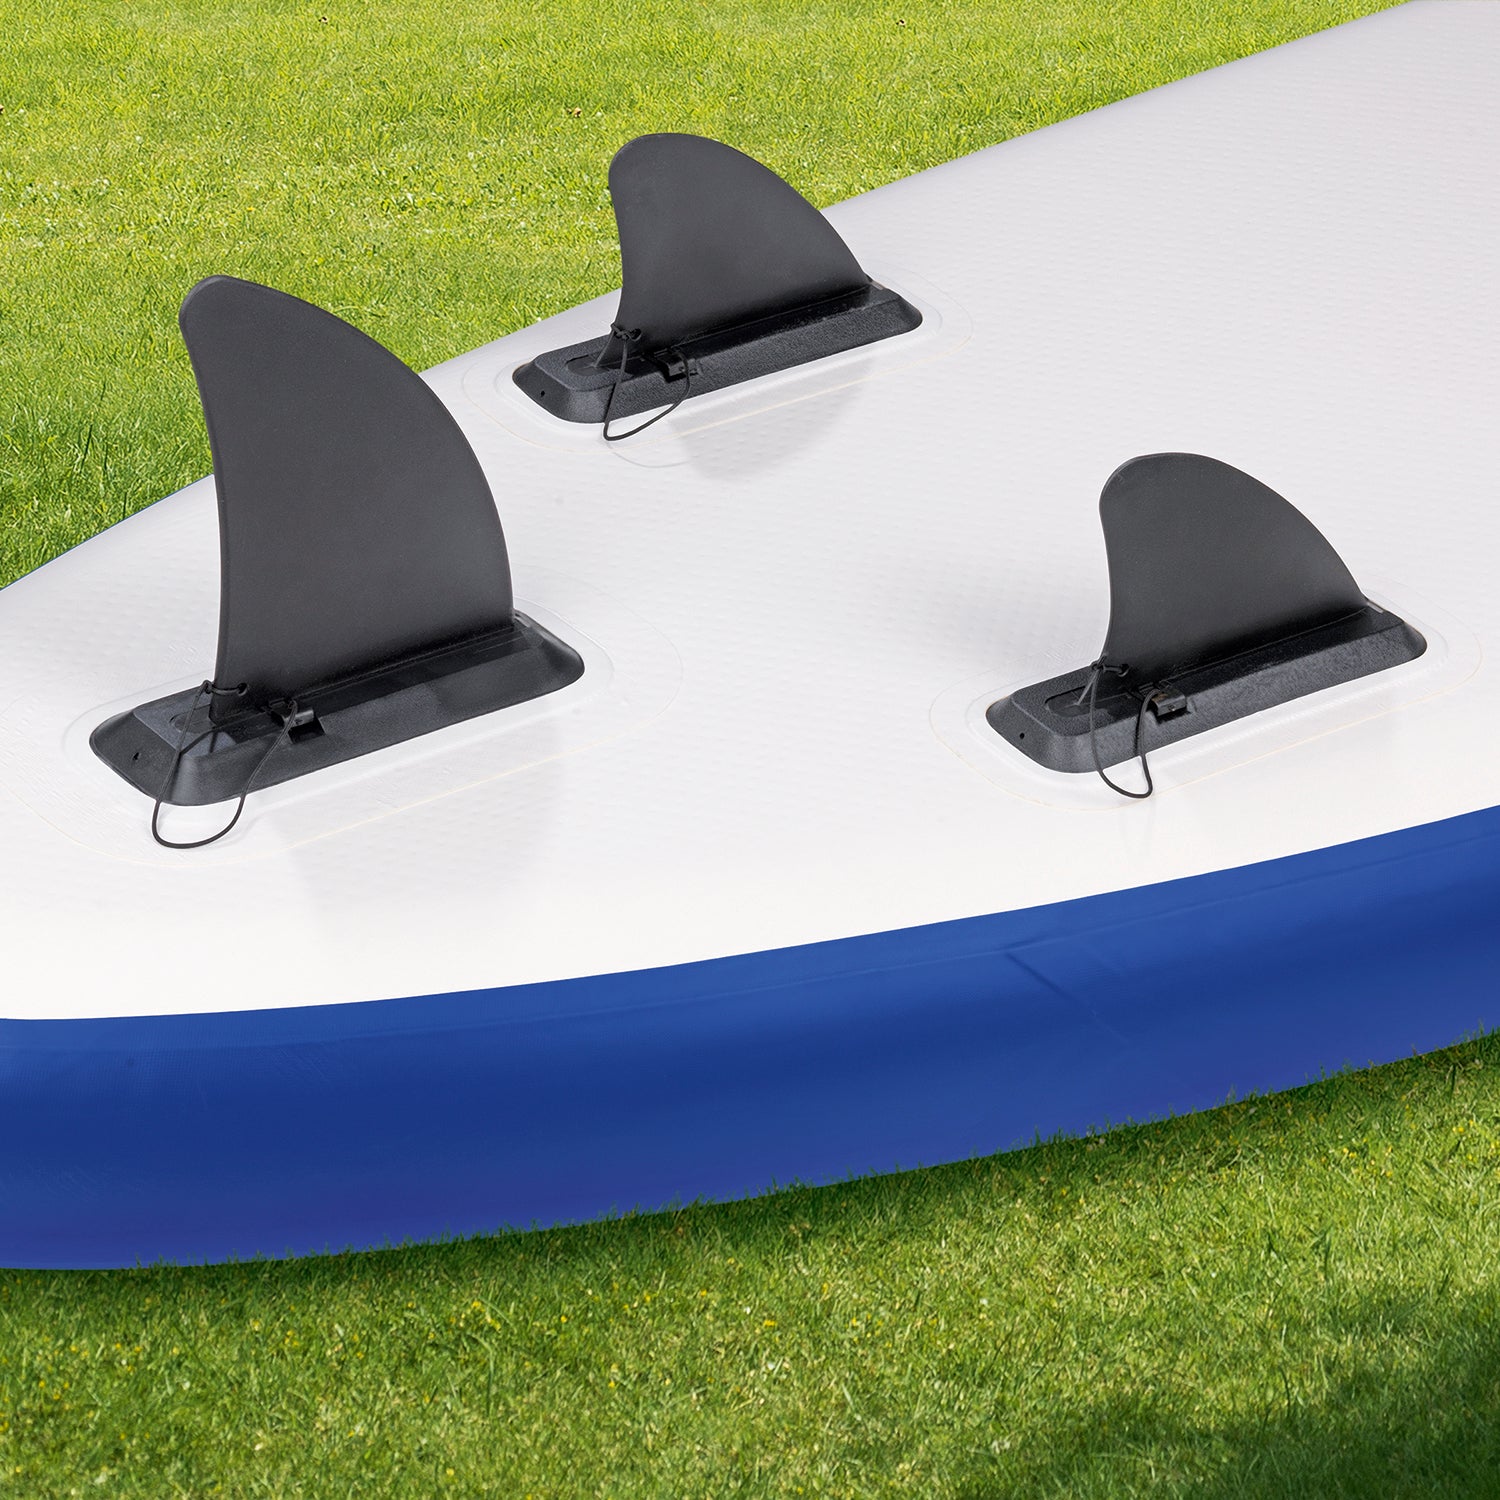 Stand-Up Paddle-Board mit Zubehör - 320 x 76 x 15 cm - weiß/blau